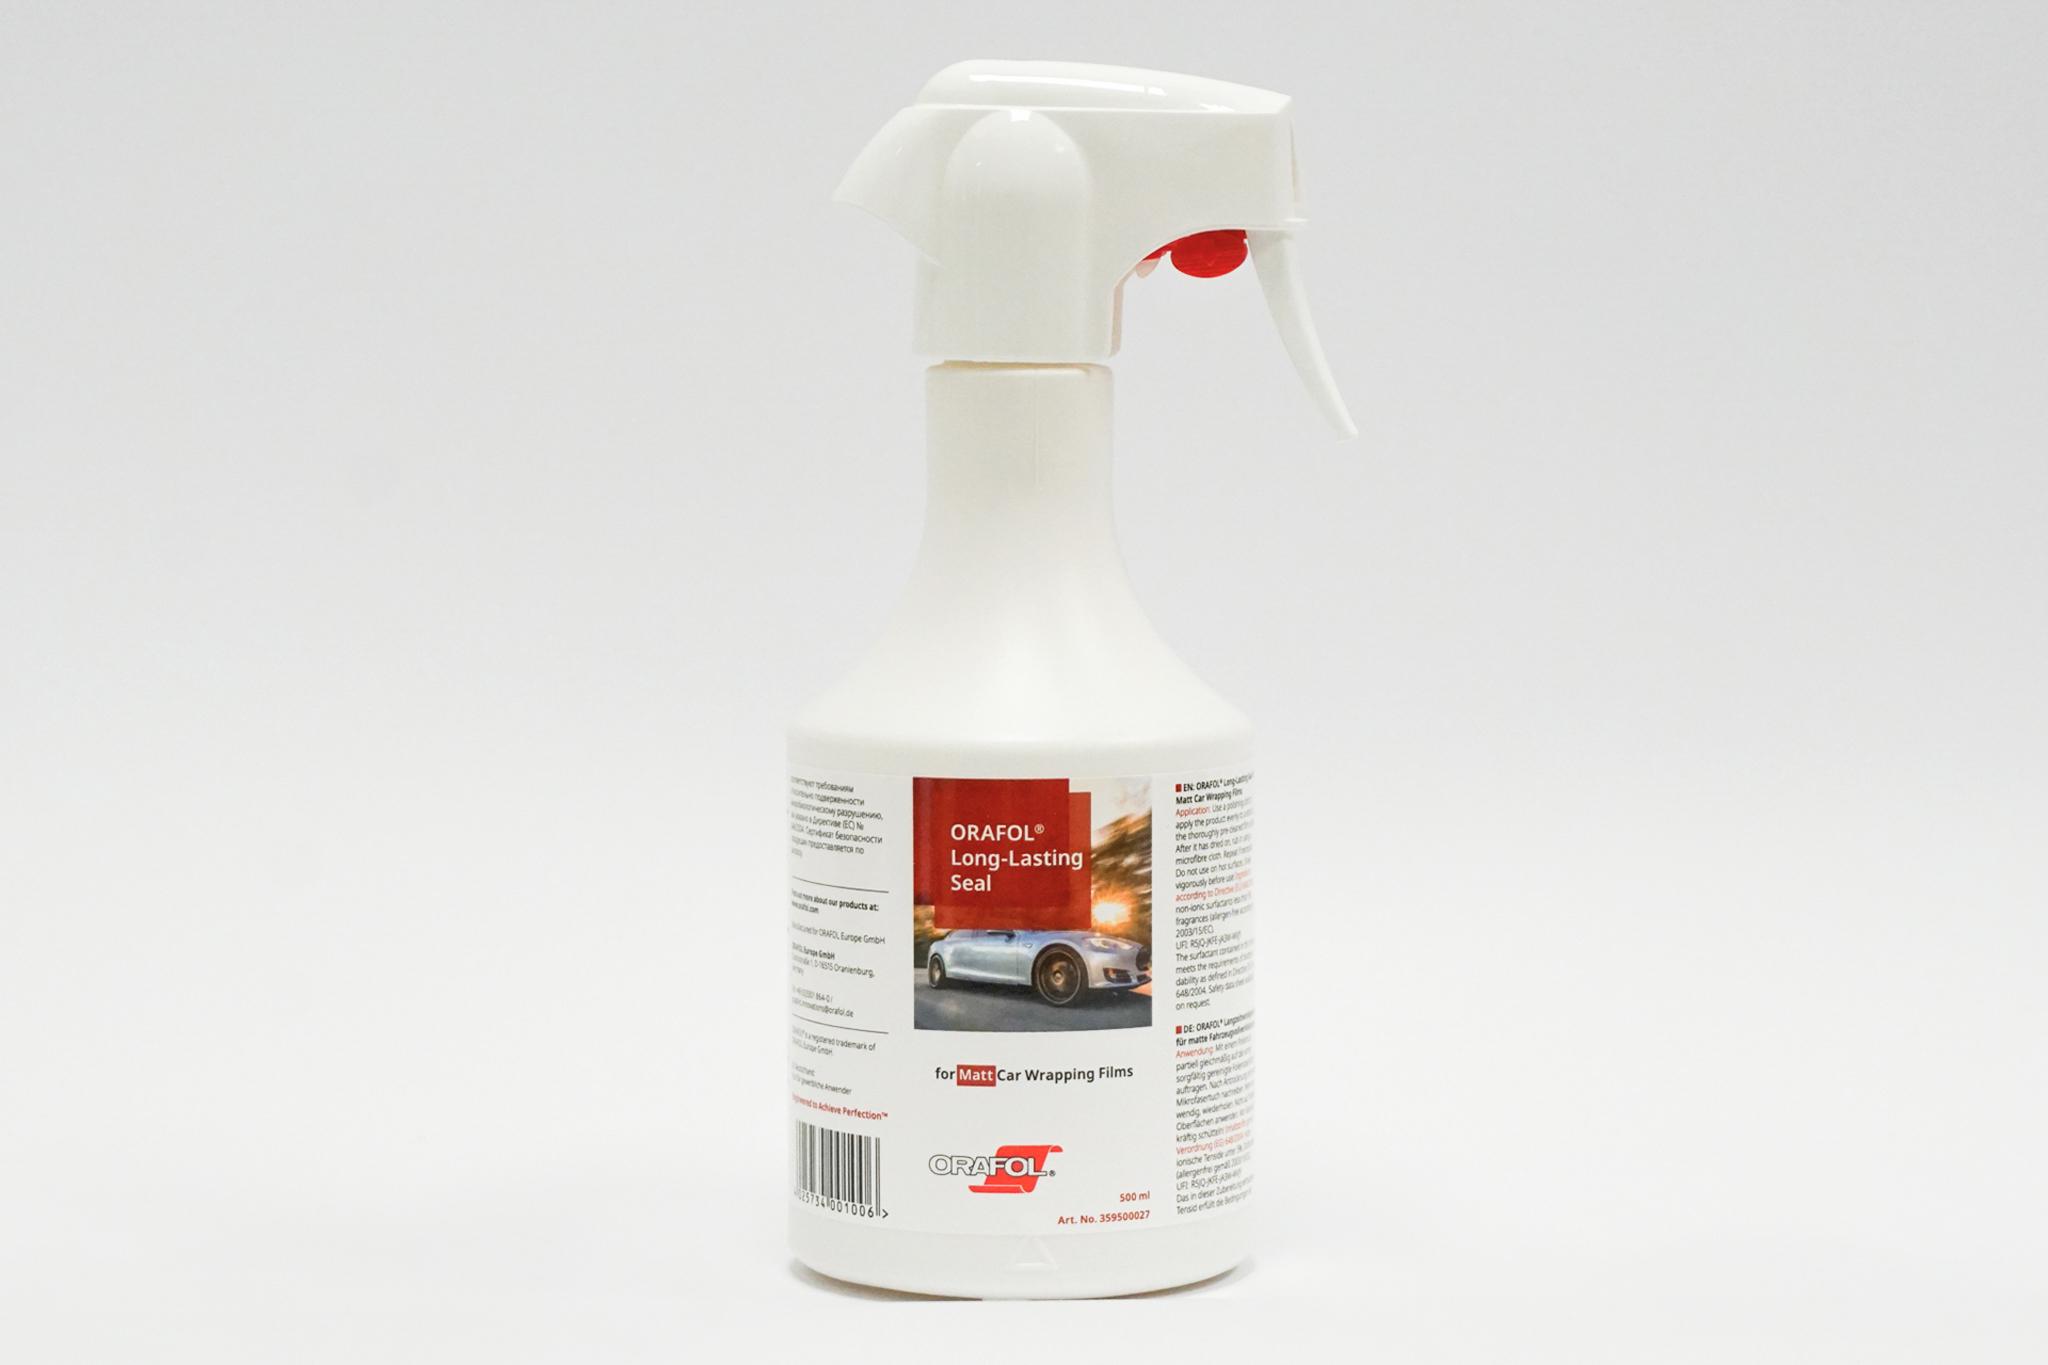 Foto: Orafol Intensivreiniger / Intensive Cleaner for Matt Car Wrapping Films - 500 ml